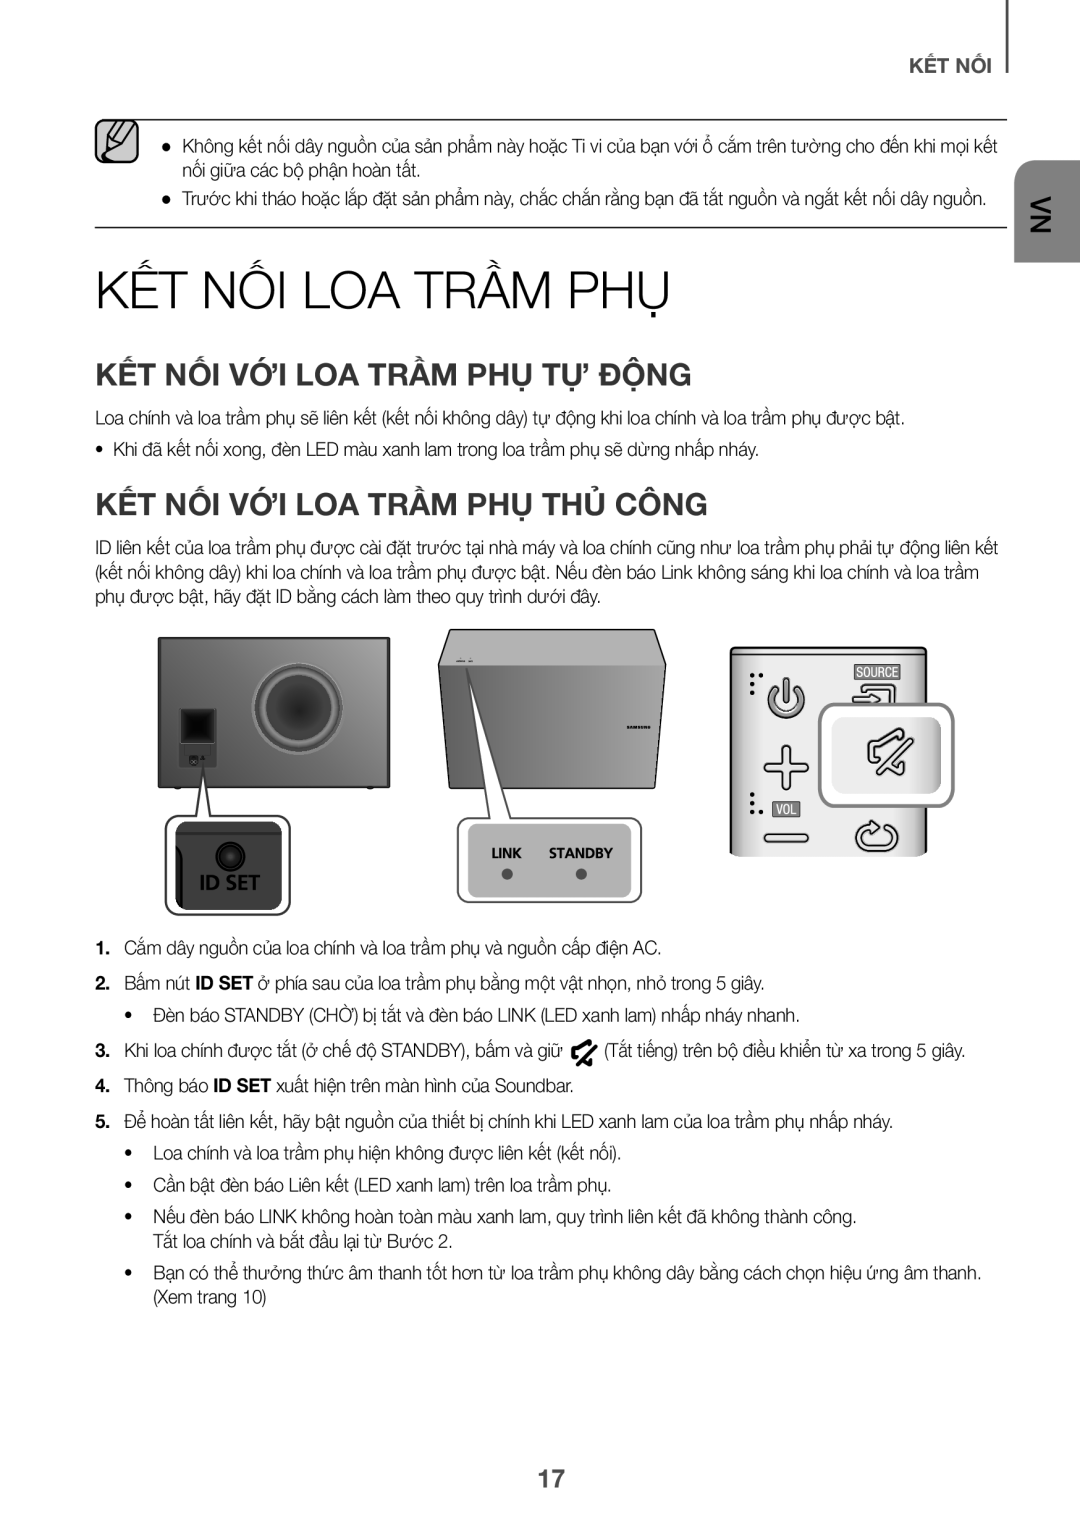 Samsung HW-J7501/XV manual Kết Nối Loa Trầm Phụ, Kêt Nôi Với Loa Trầm Phụ Tự Động, Công, Để 